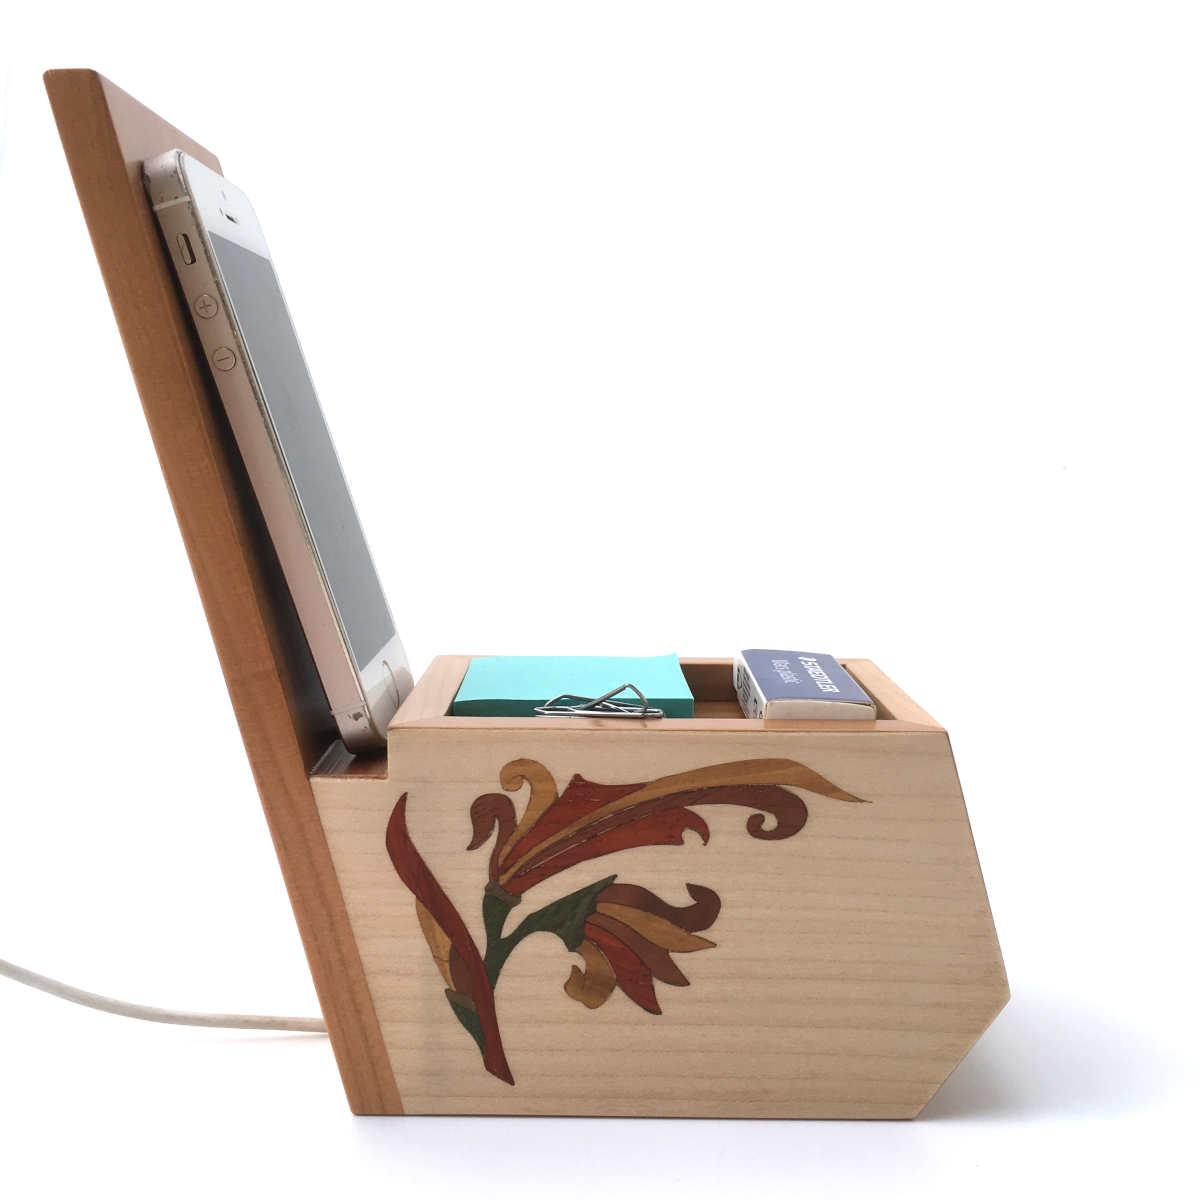 Organisateur de bureau en bois avec support téléphone, marqueterie